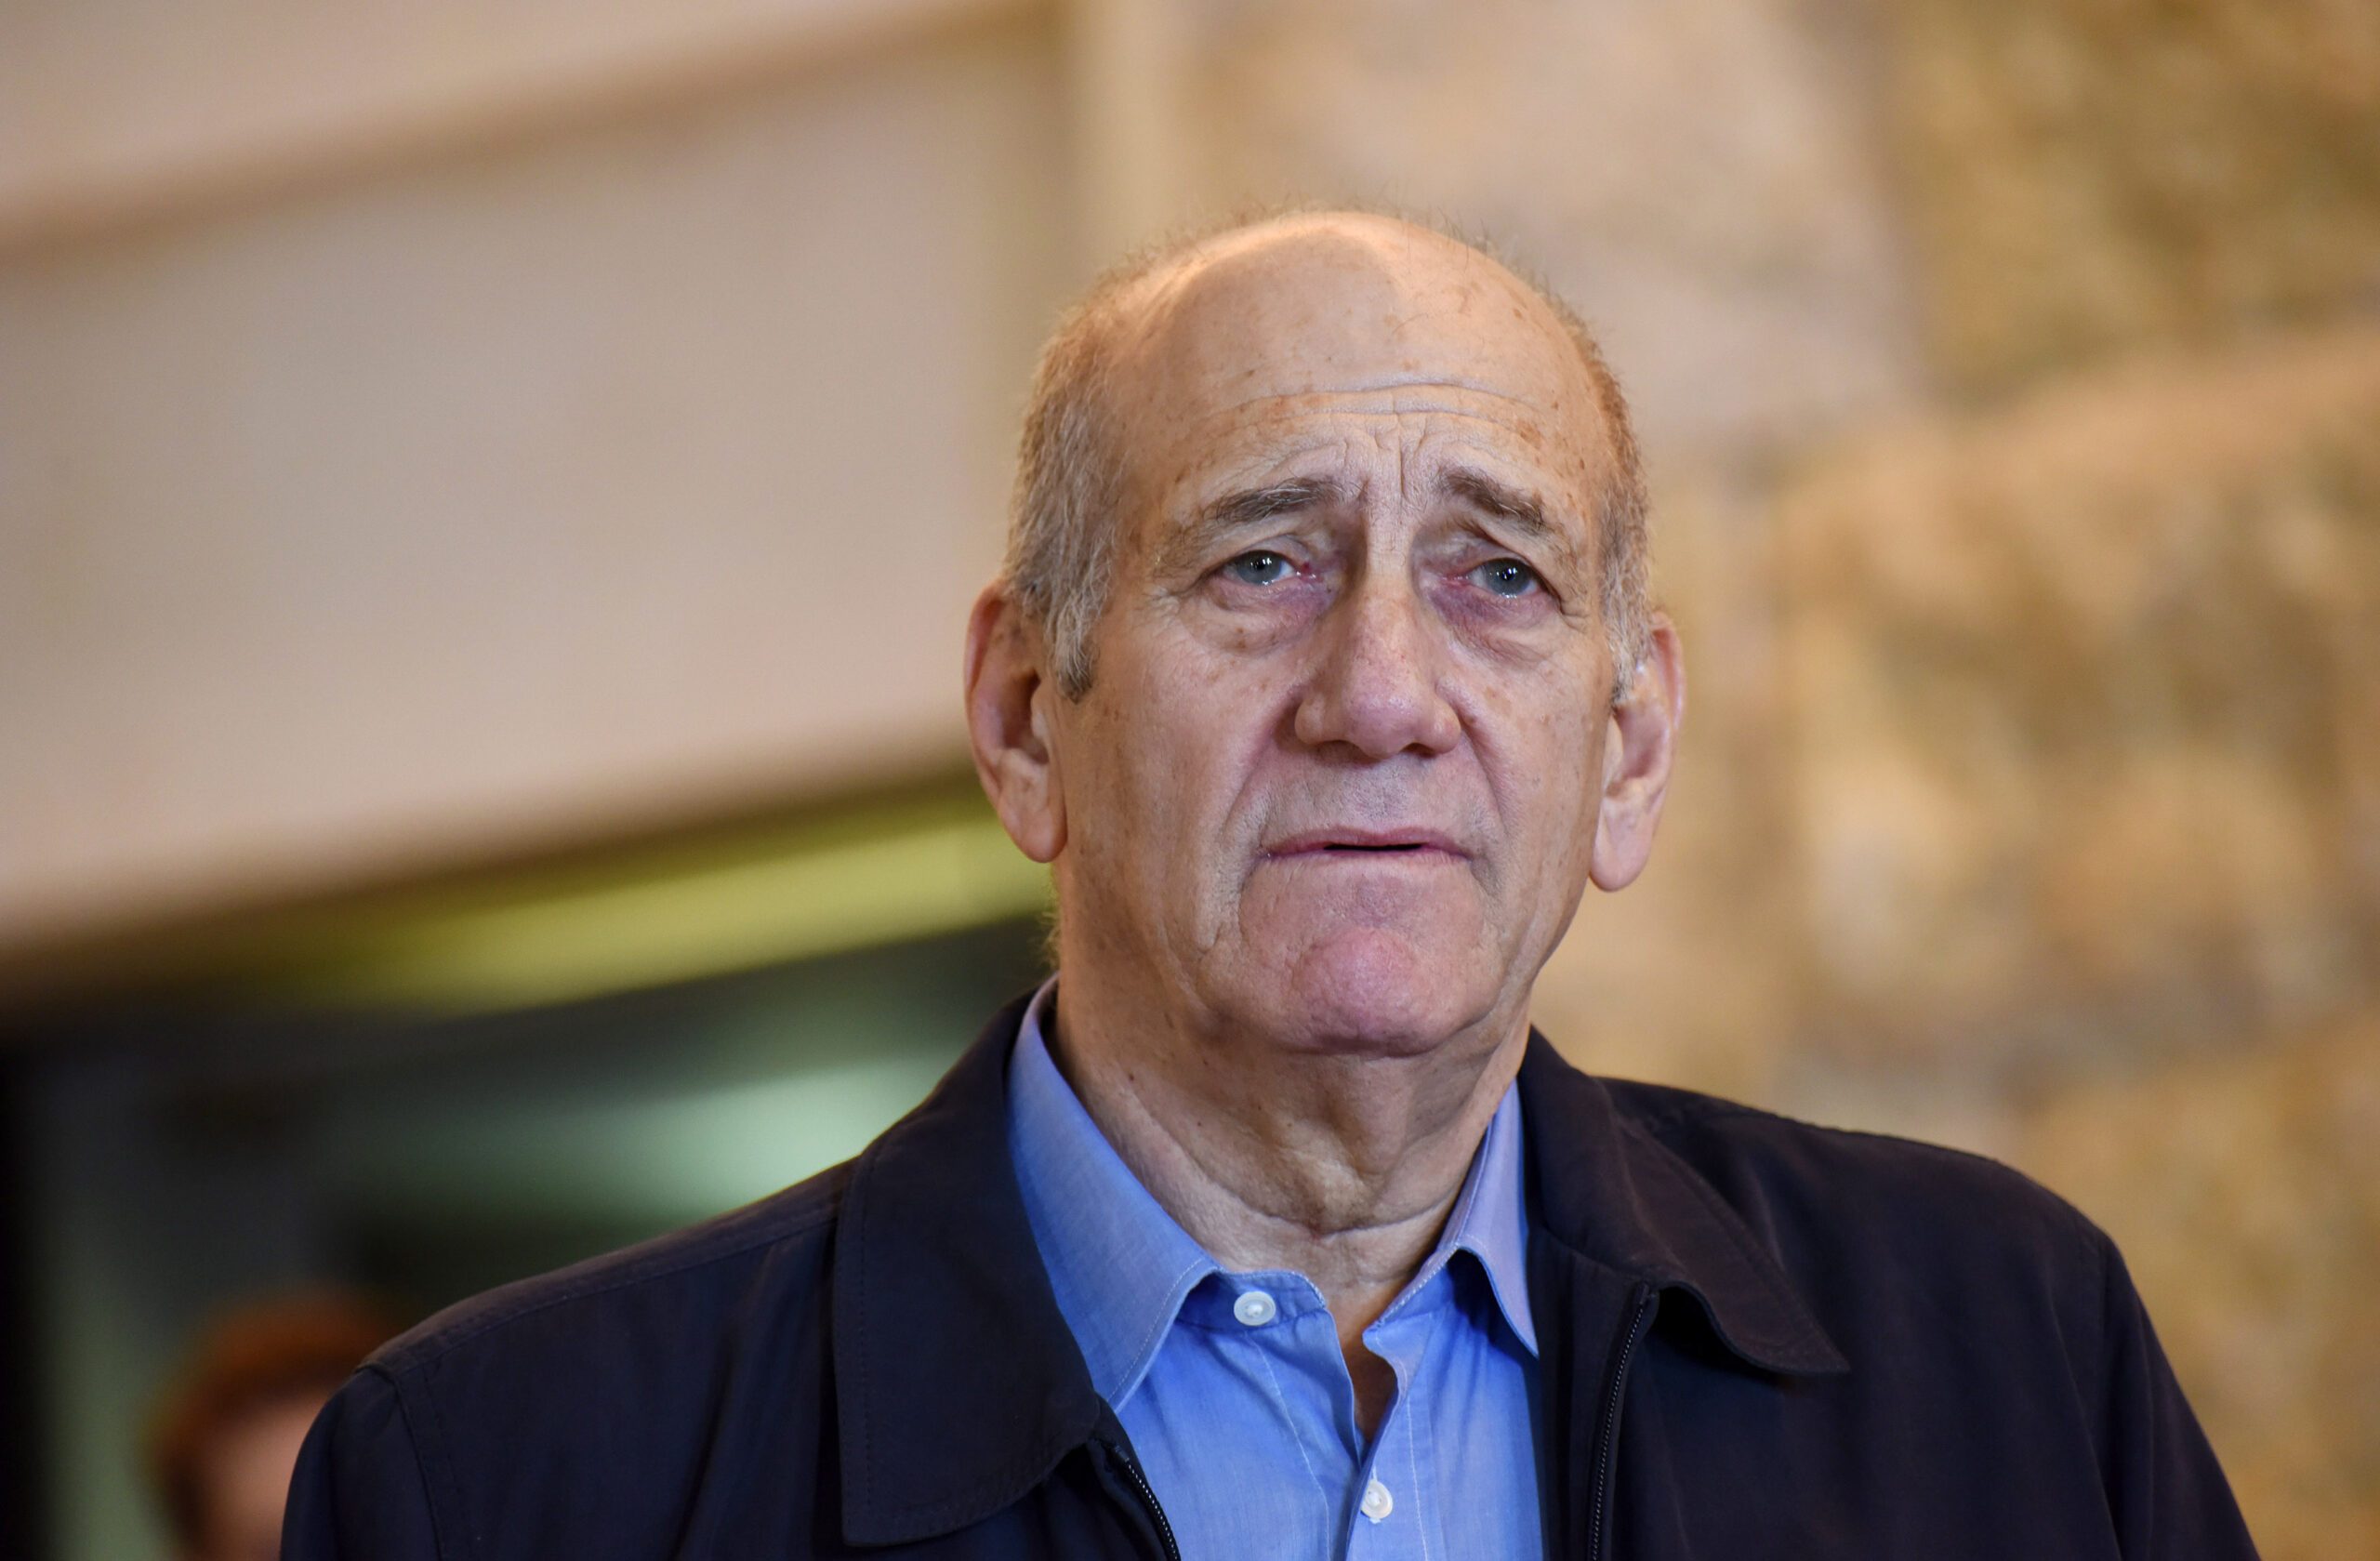 Ex-Israeli Prime Minister Olmert to begin prison term